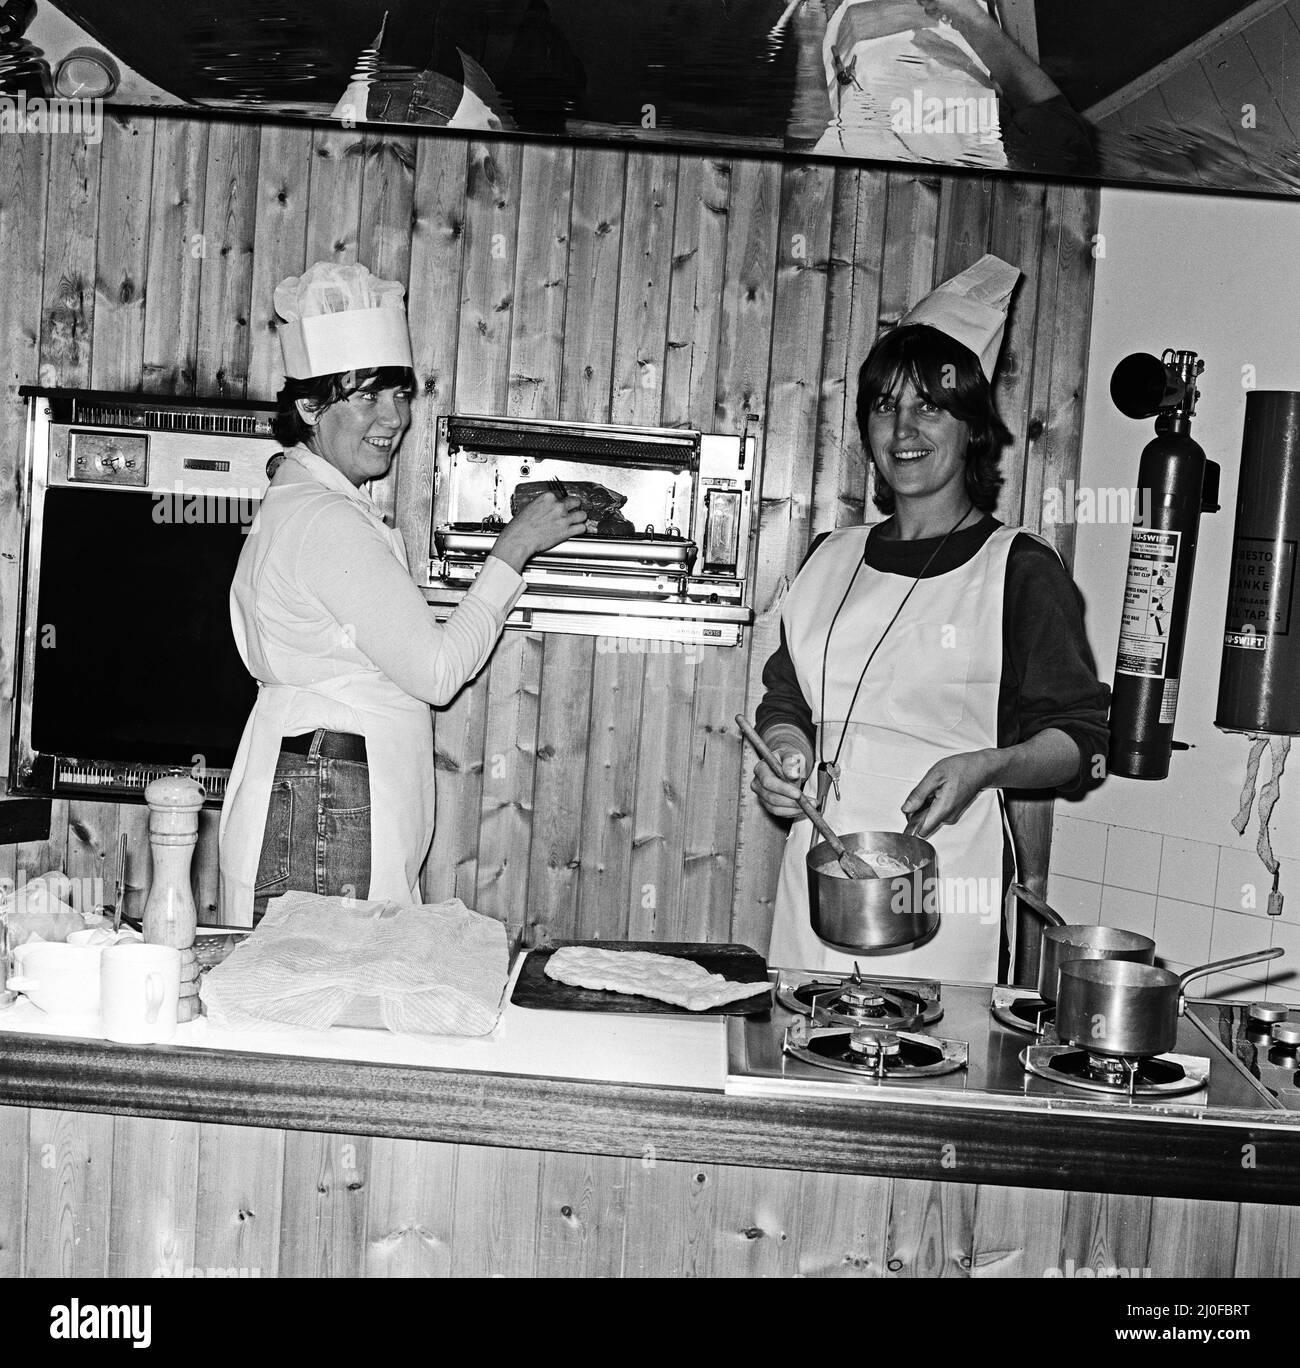 Prudence Leith (auch bekannt als Prue Leith) links im weißen Hemd unter ihrer weißen Schürze, zusammen mit Caroline Waldergrave rechts mit ihrem schwarzen Hemd unter ihrer weißen Schürze. Prue und Caroline sind Autoren eines neuen Kochbuches - Leith's Cookery Course Book 1 - und werden gesehen, wie sie sich heute Abend auf die Ankunft eines ihrer abendlichen Kochkurse vorbereiten. Bild aufgenommen am 24.. Oktober 1979 Stockfoto